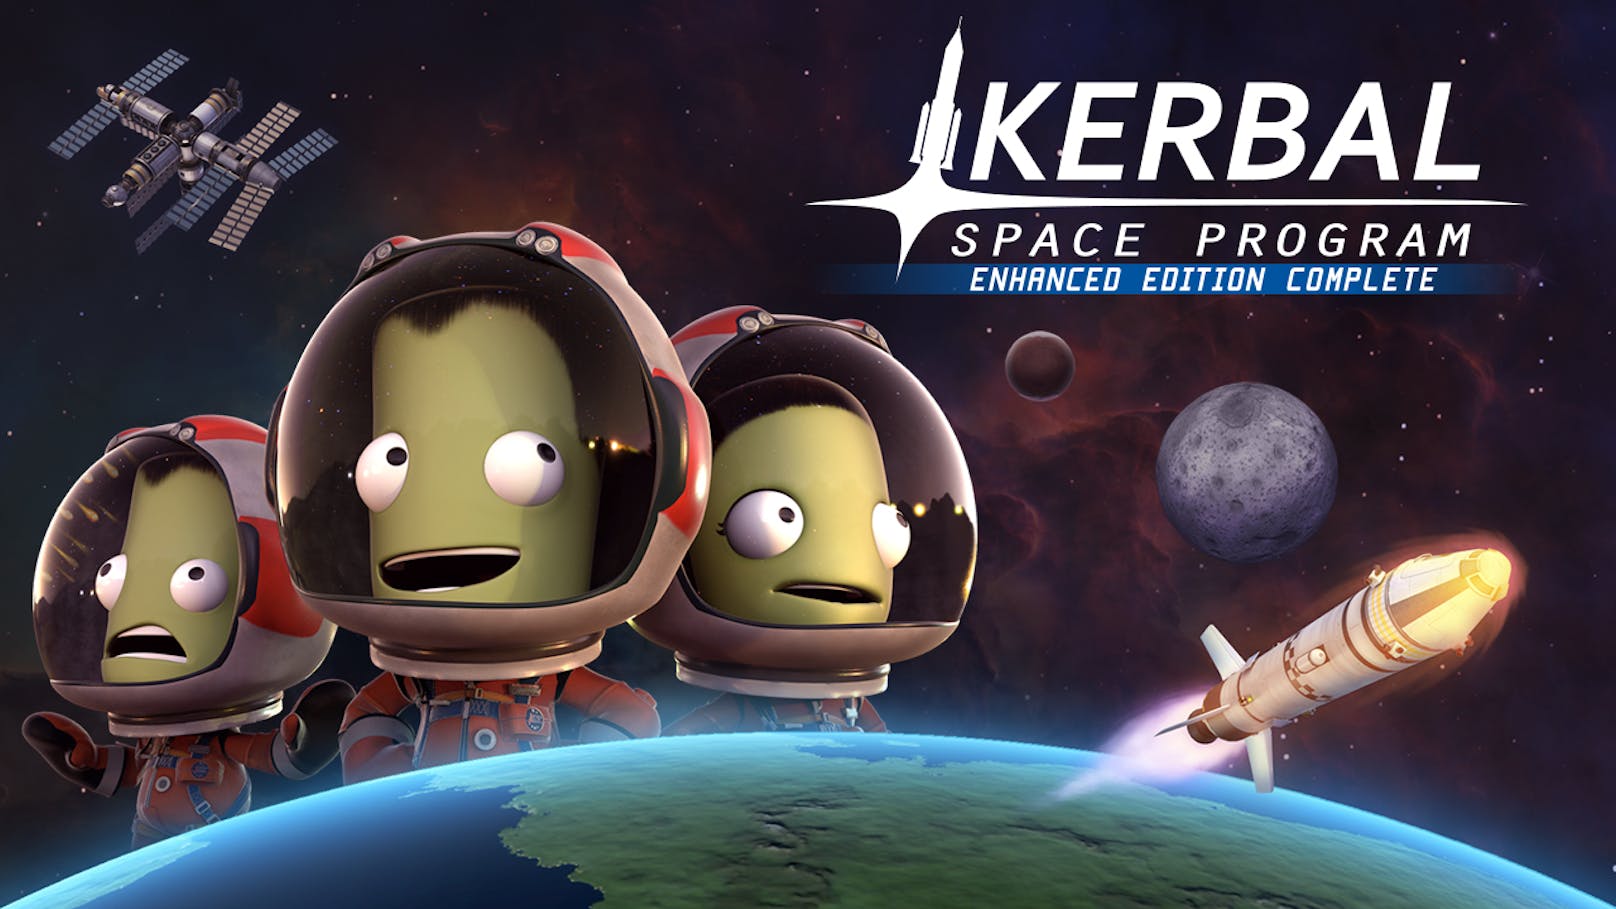 Die "Kerbal Space Program: Enhanced Edition Complete" ist jetzt für Konsolen erhältlich.